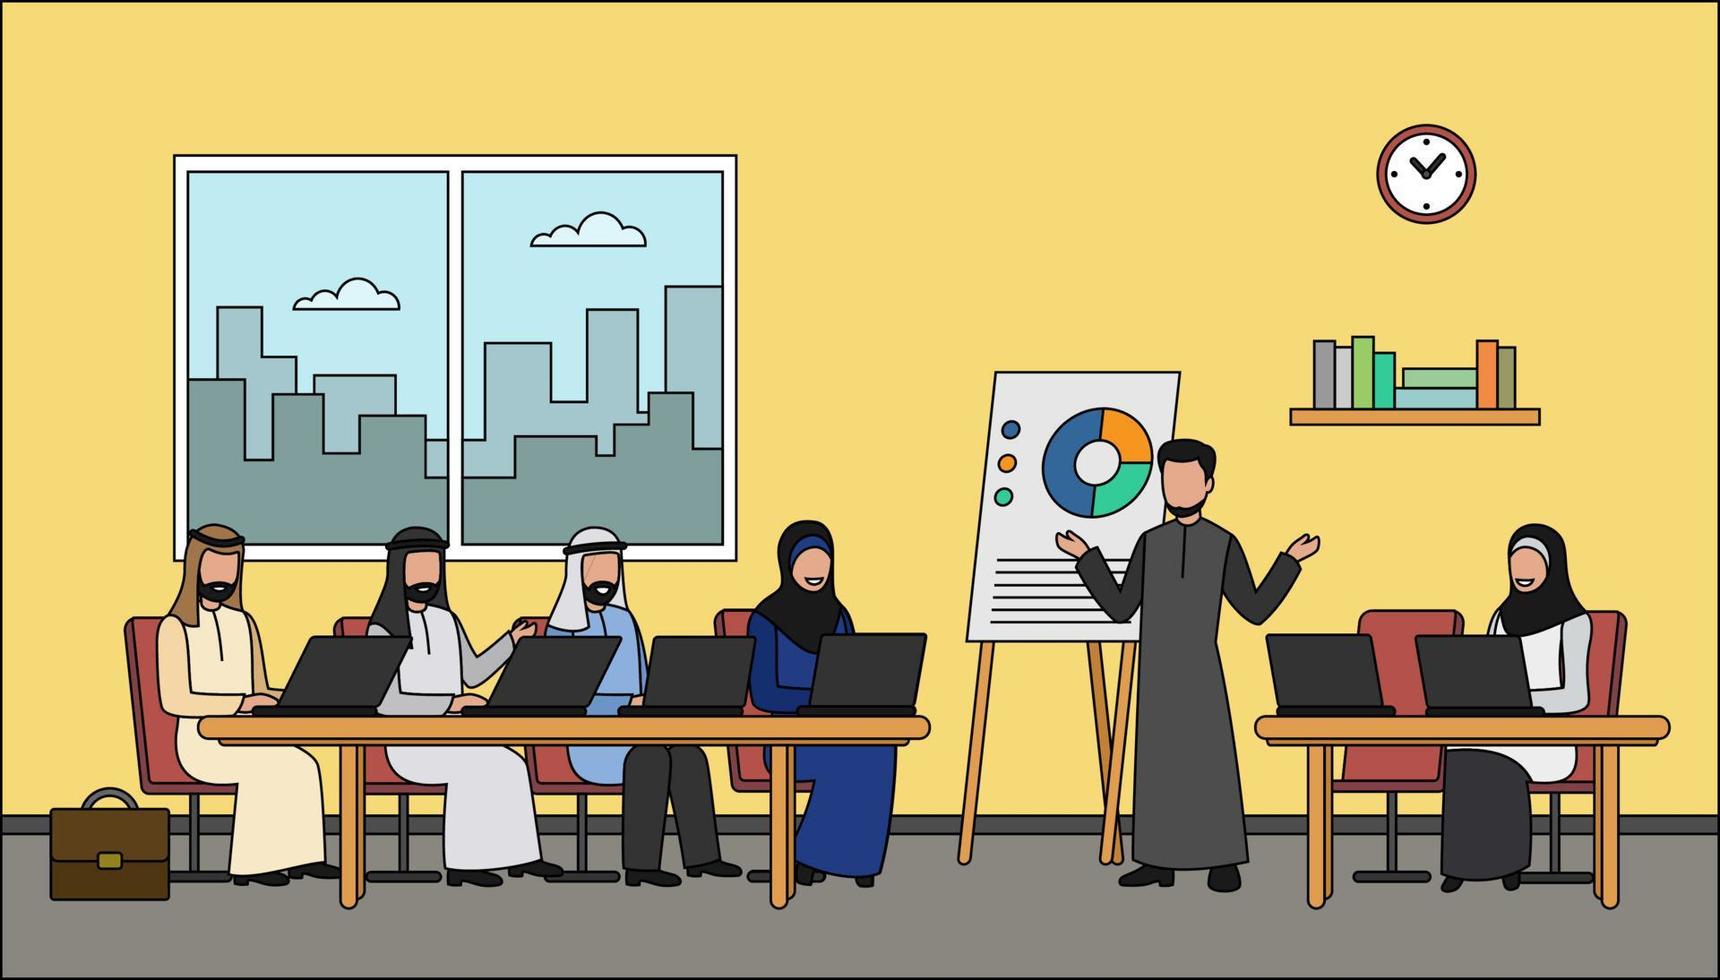 illustration vectorielle de caractères d'affaires arabes - discussion d'affaires vecteur